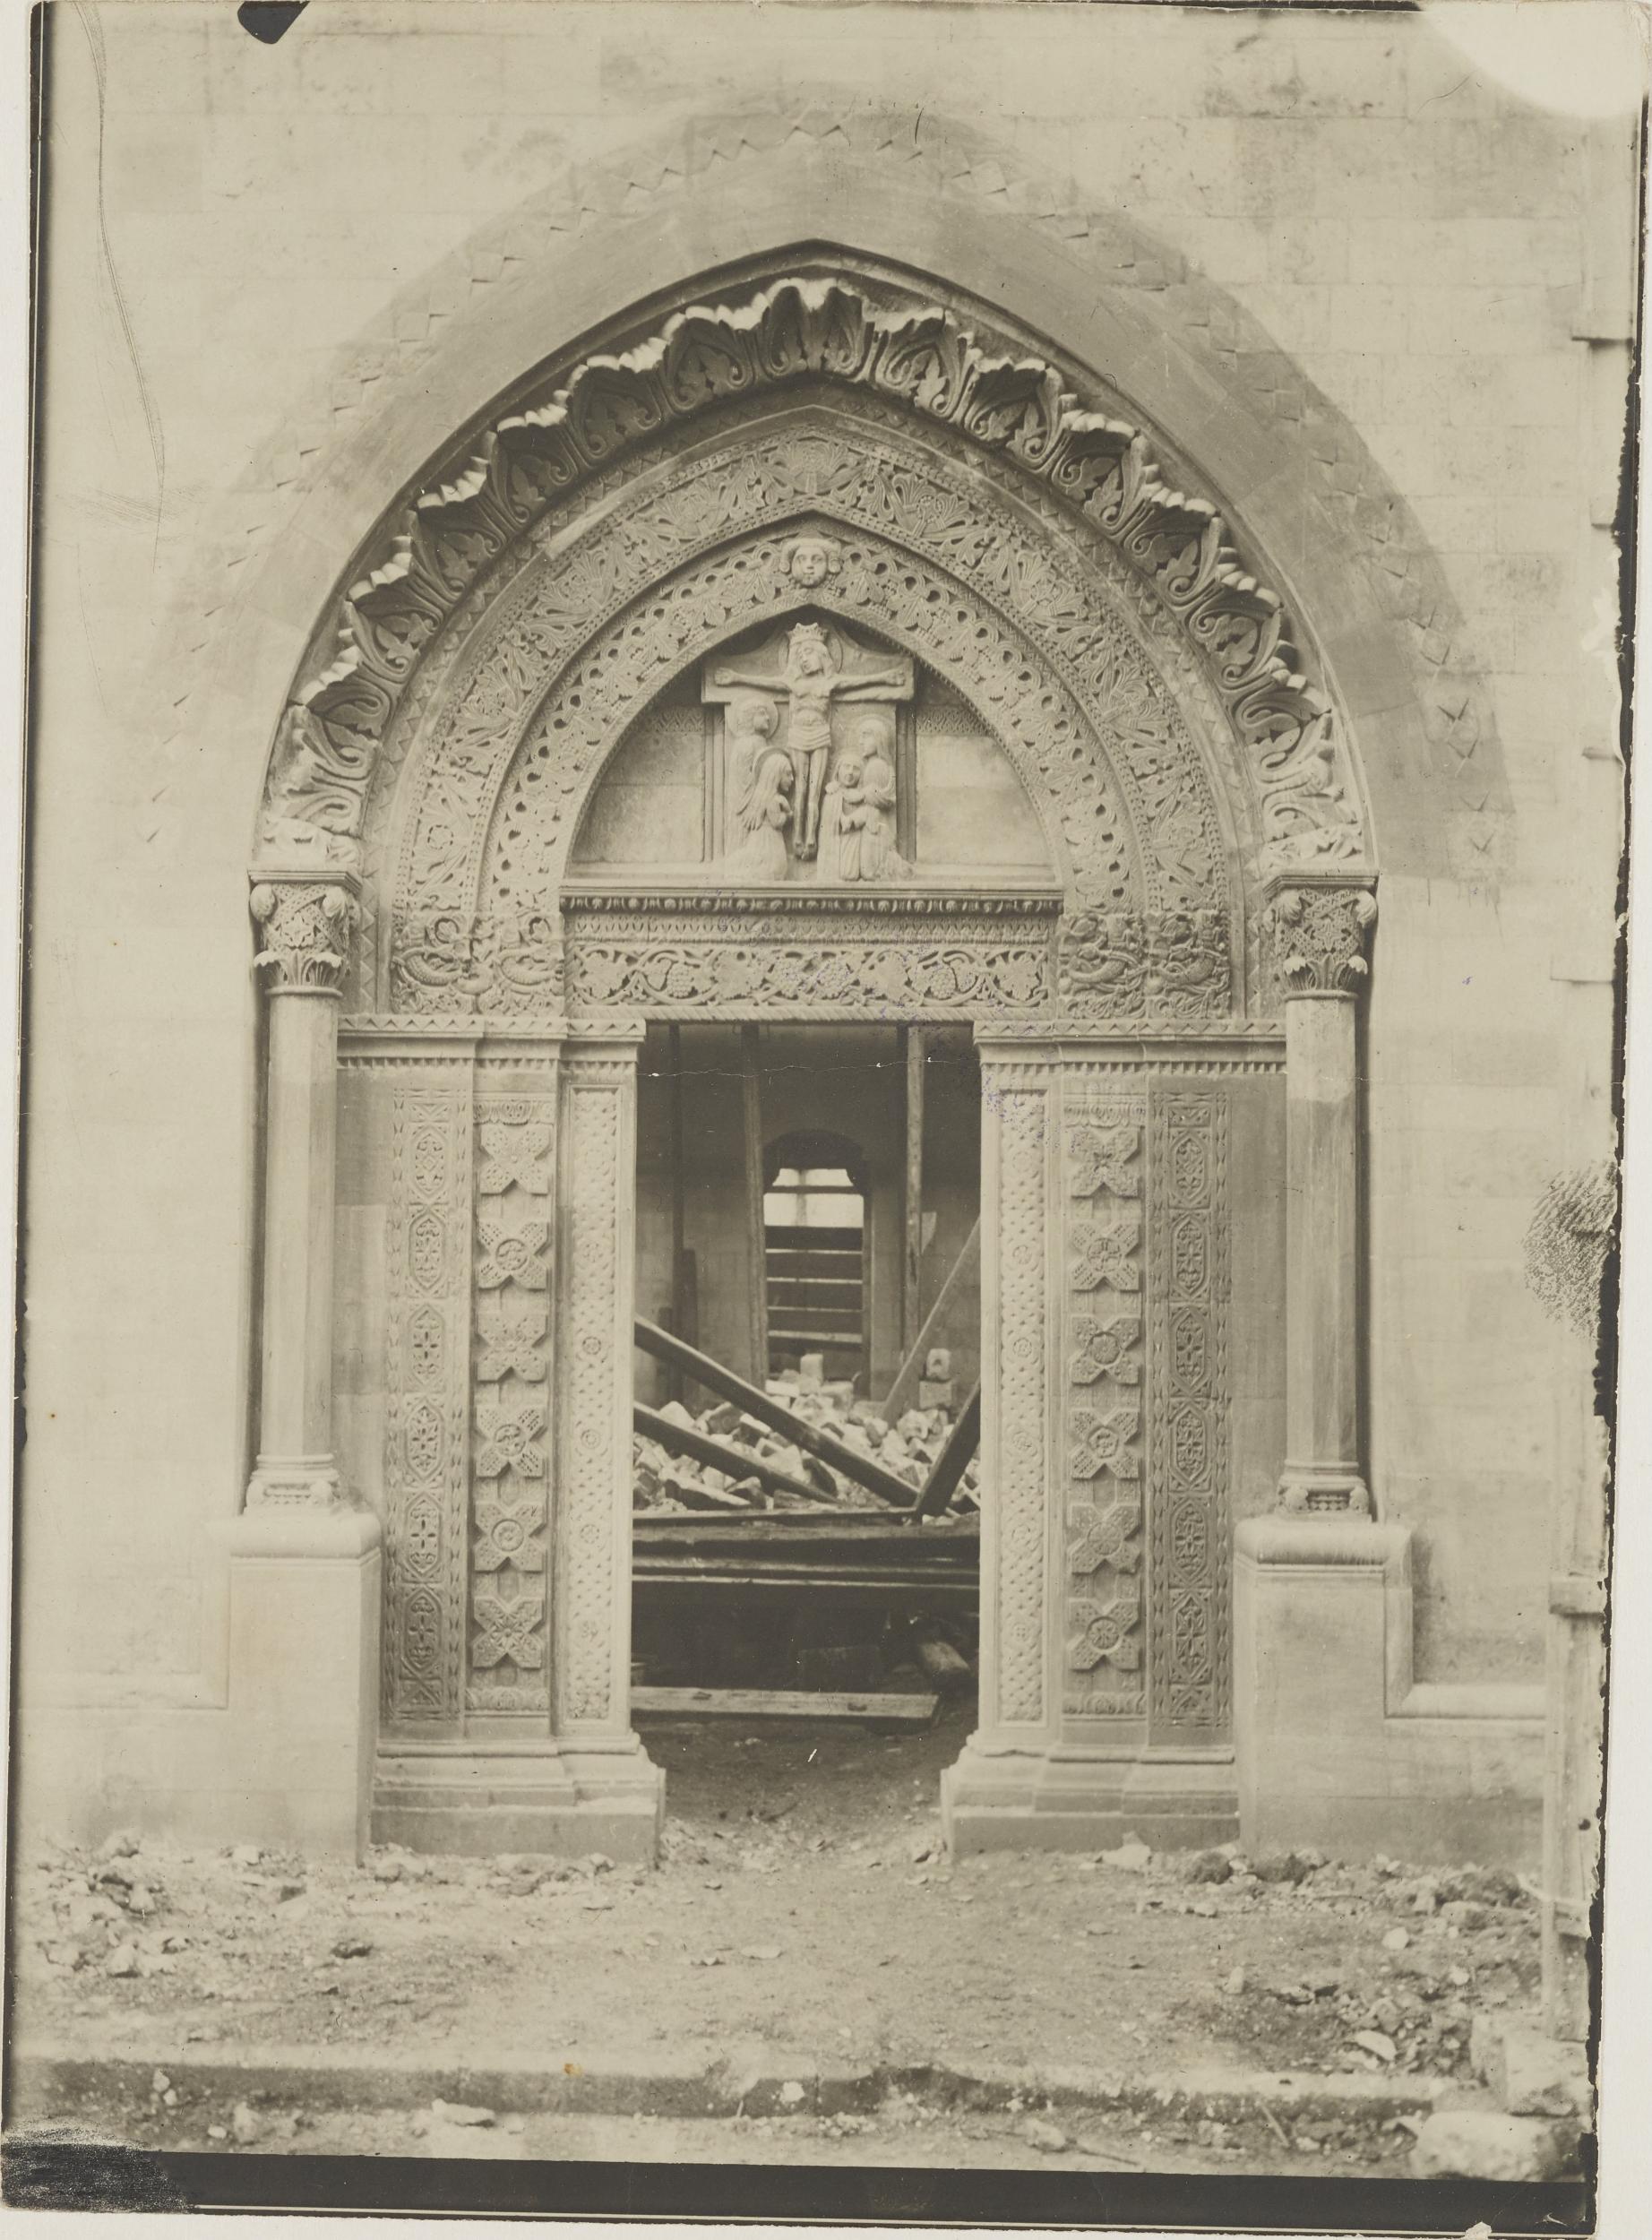 Fotografo non identificato, Conversano - Cattedrale, portale laterale, scorcio durante i restauri del 1915, 1901-1925, gelatina ai sali d'argento/carta, MPI155326